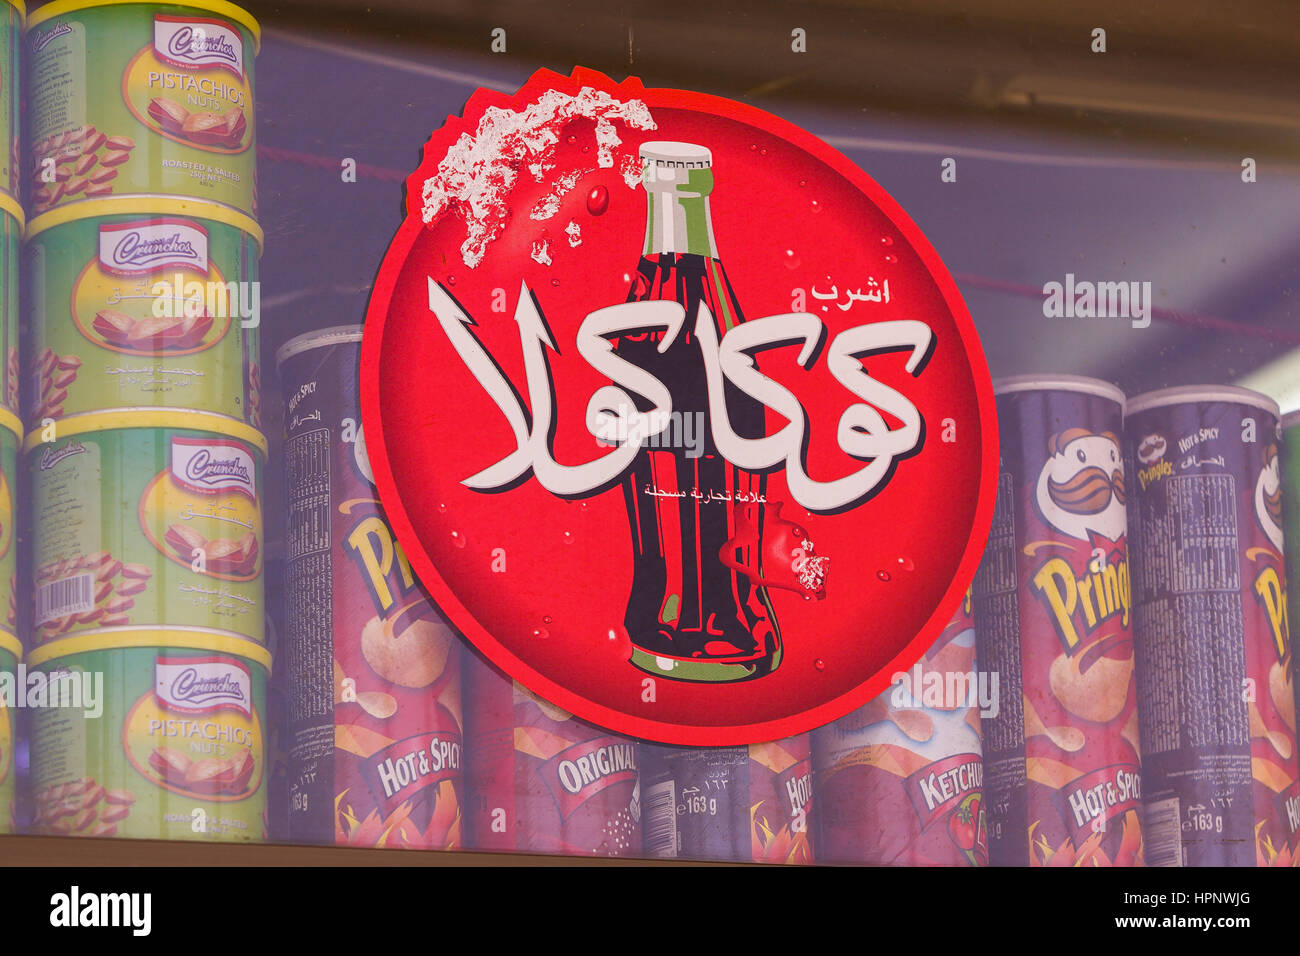 AL AIN, ÉMIRATS ARABES UNIS - Rouge Coca-cola inscription en arabe, montrant une bouteille de coke. Banque D'Images